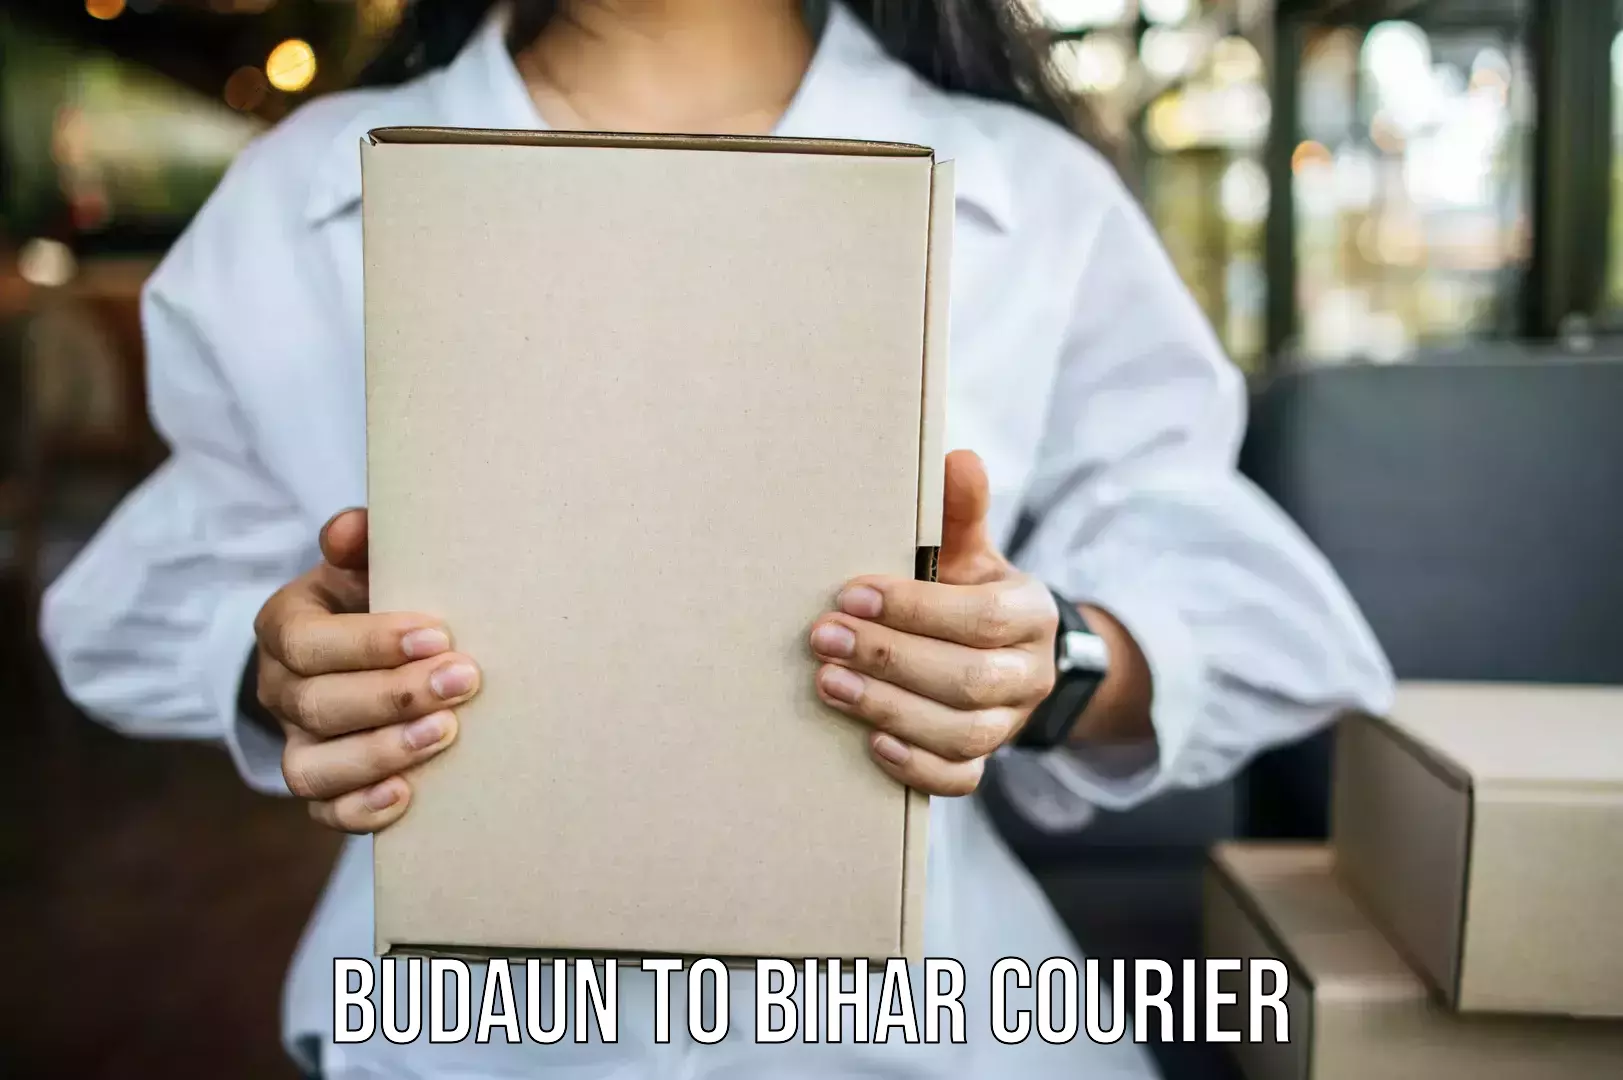 Safe household movers Budaun to Buxar